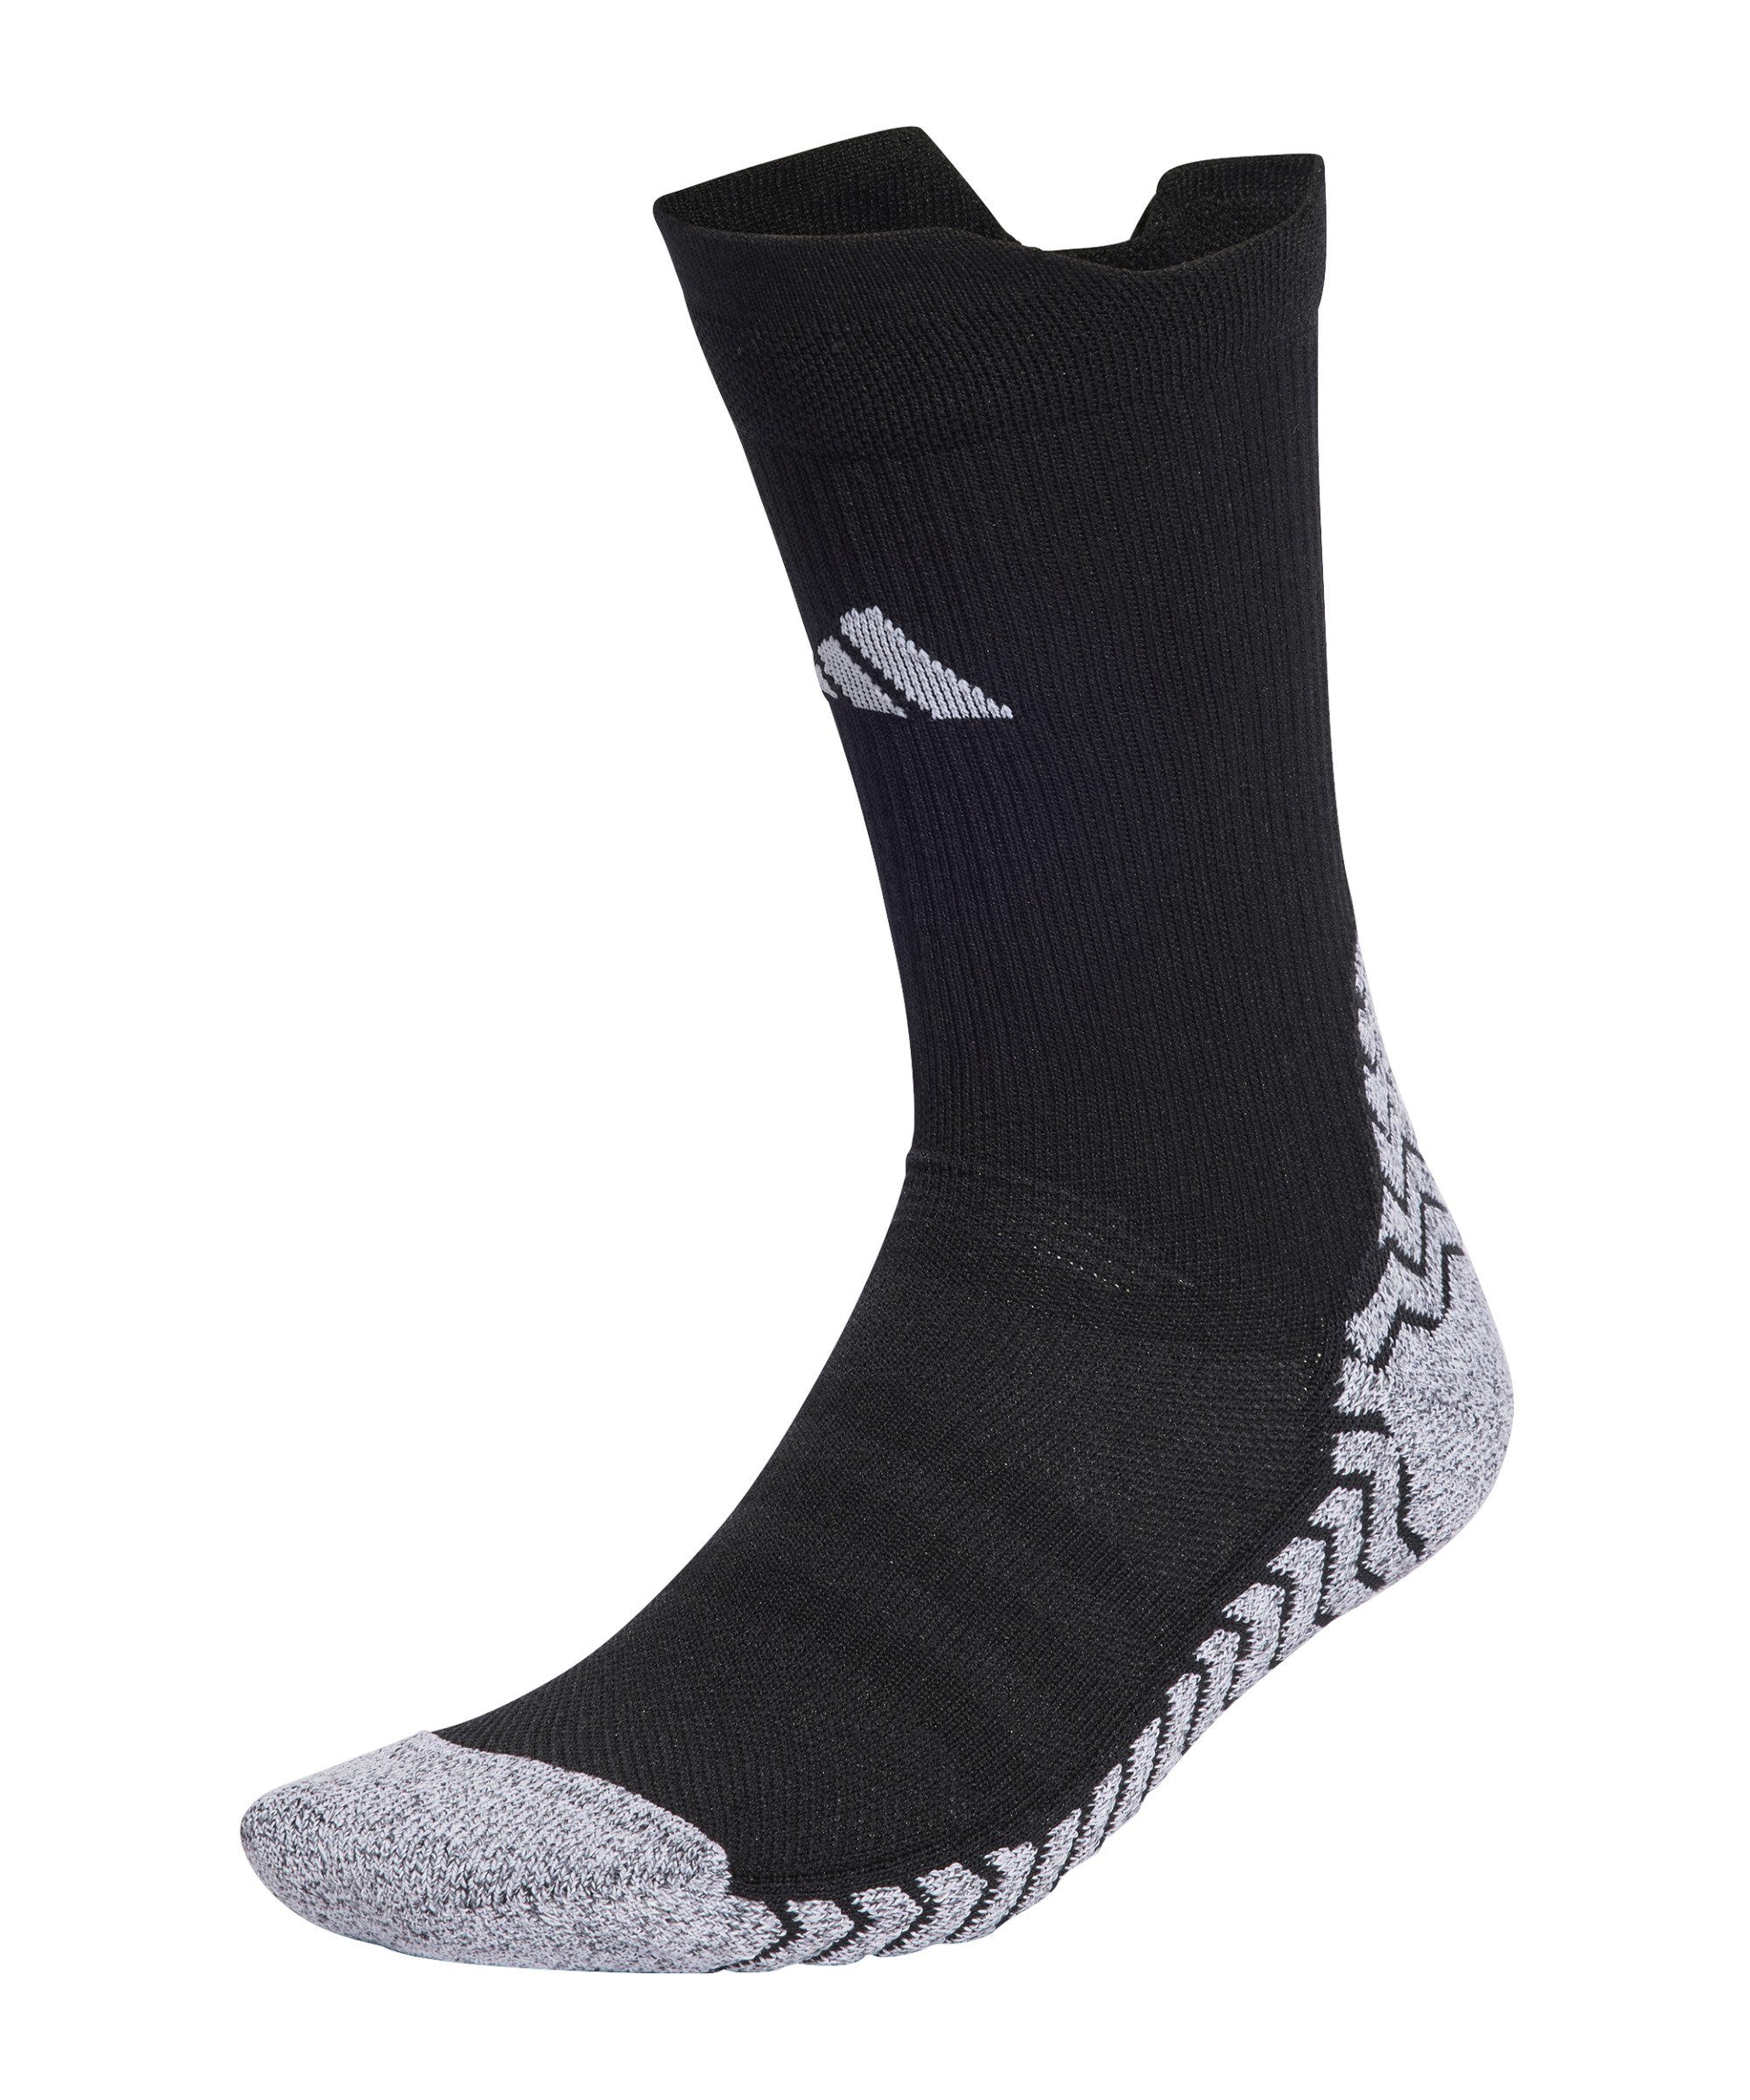 adidas Performance Sportsocken Grip Socken default schwarzweiss